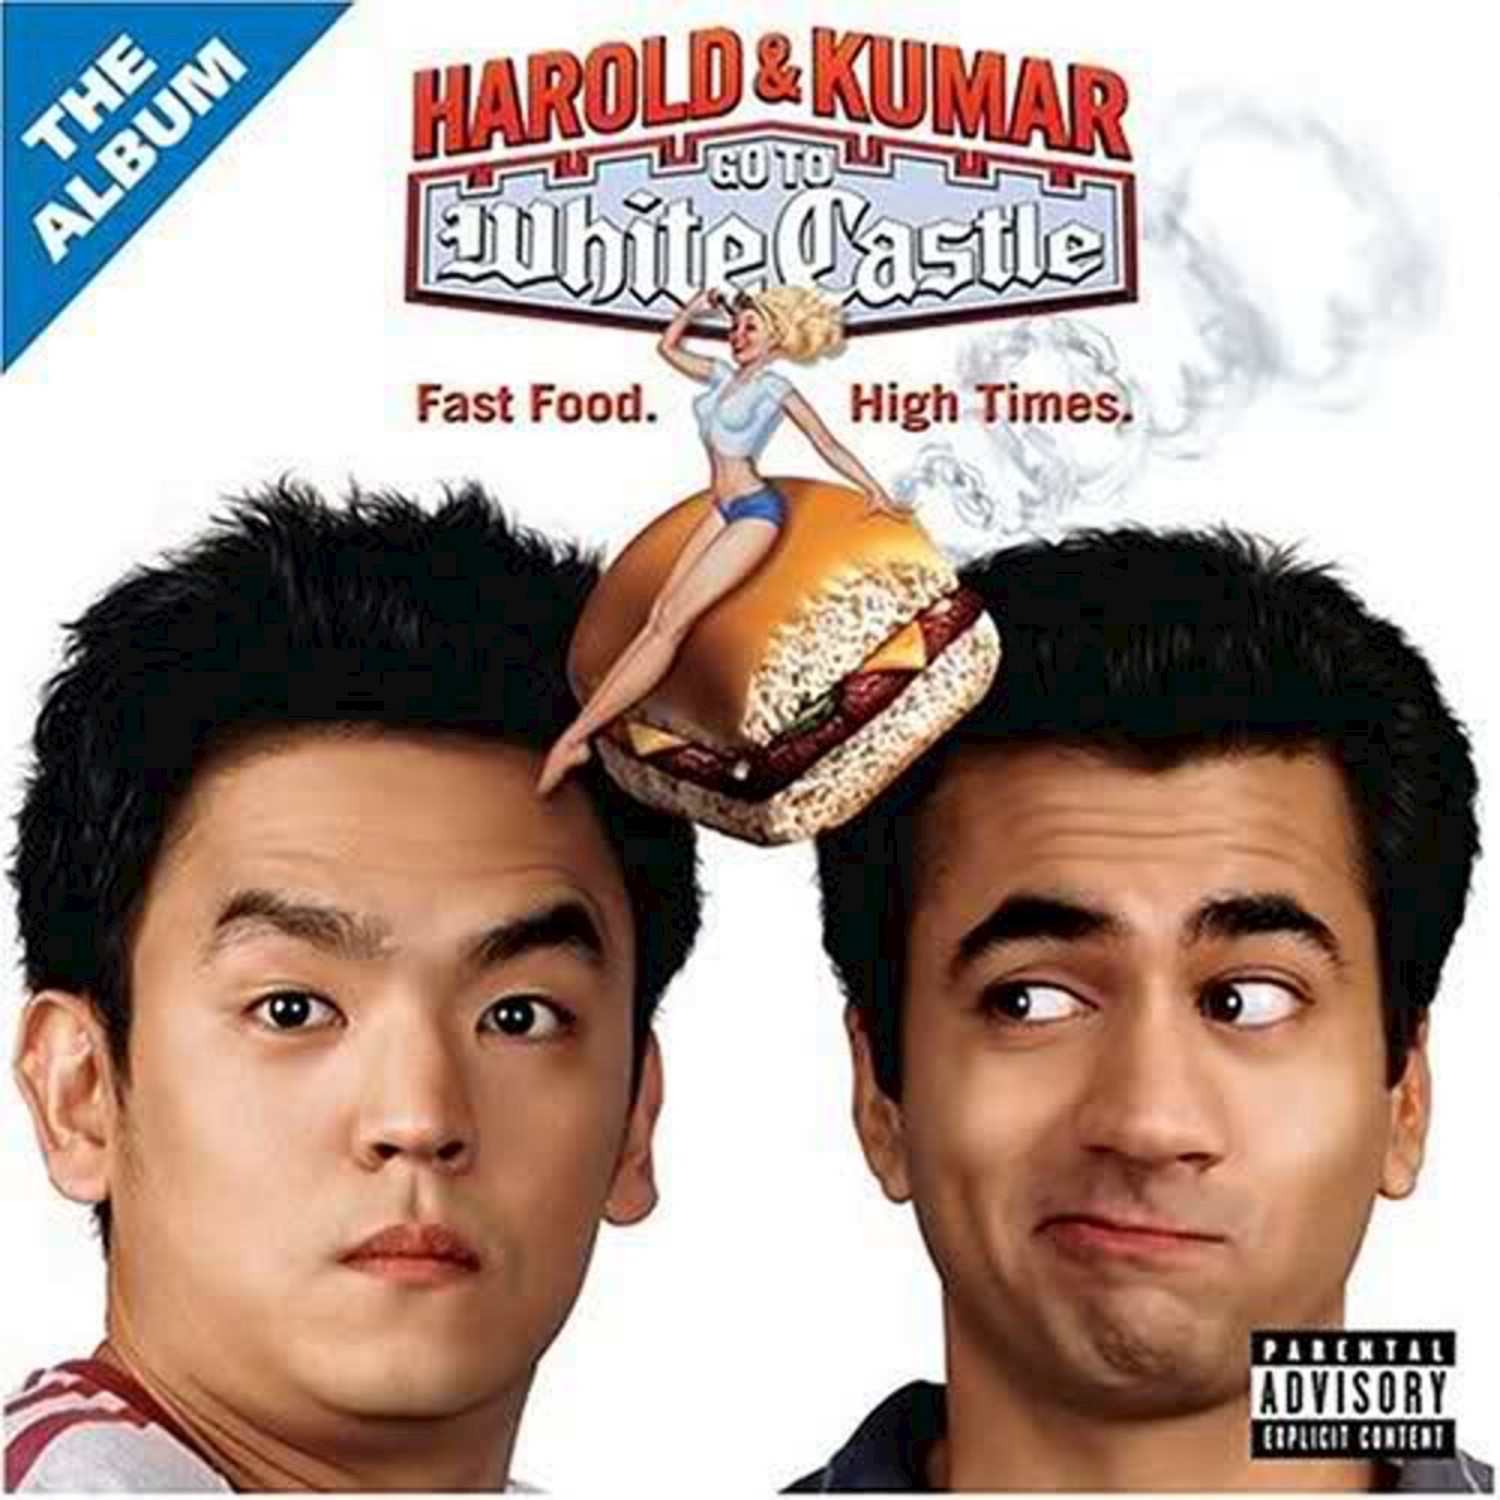 Harold & Kumar Go To White Castle: The Album